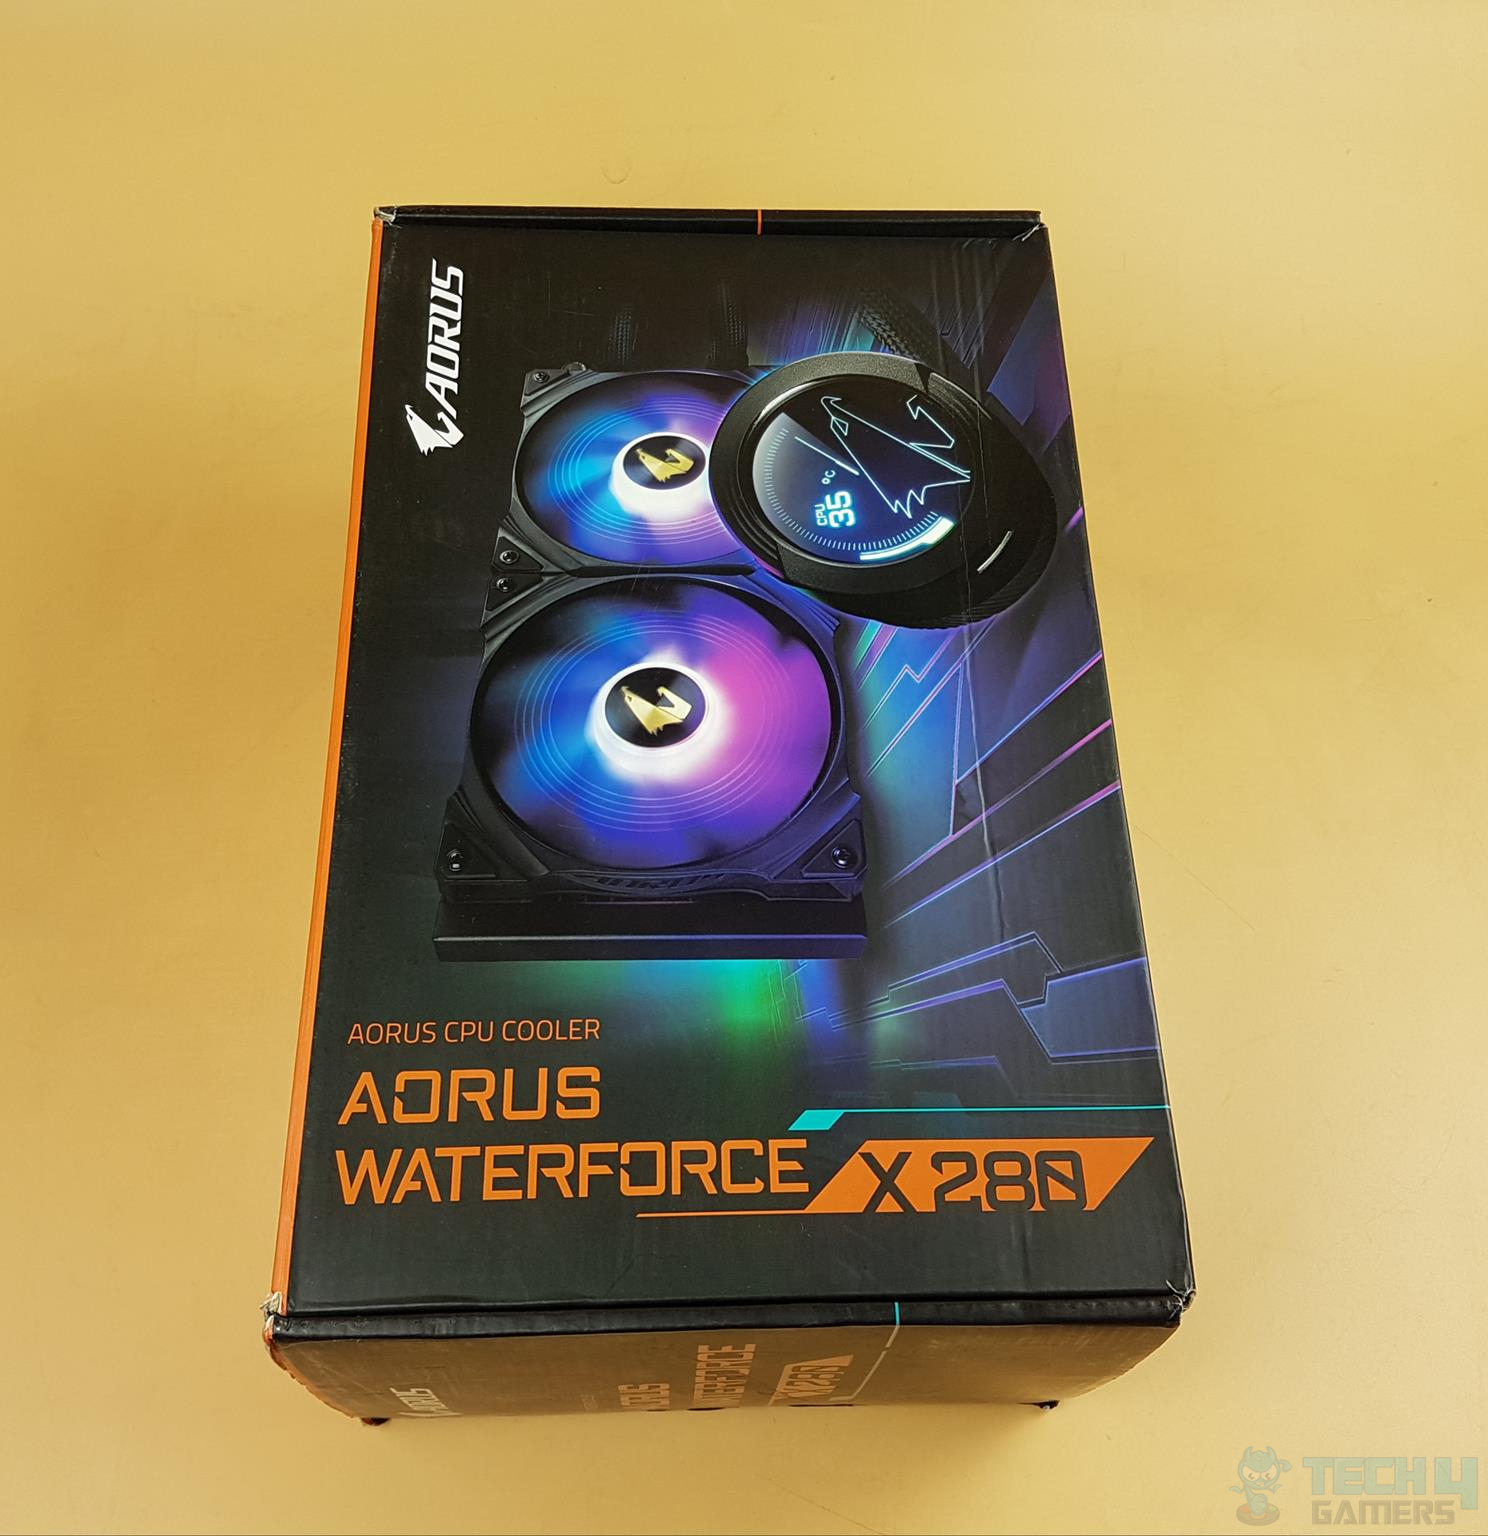 AORUS WATERFORCE X 280 Packaging